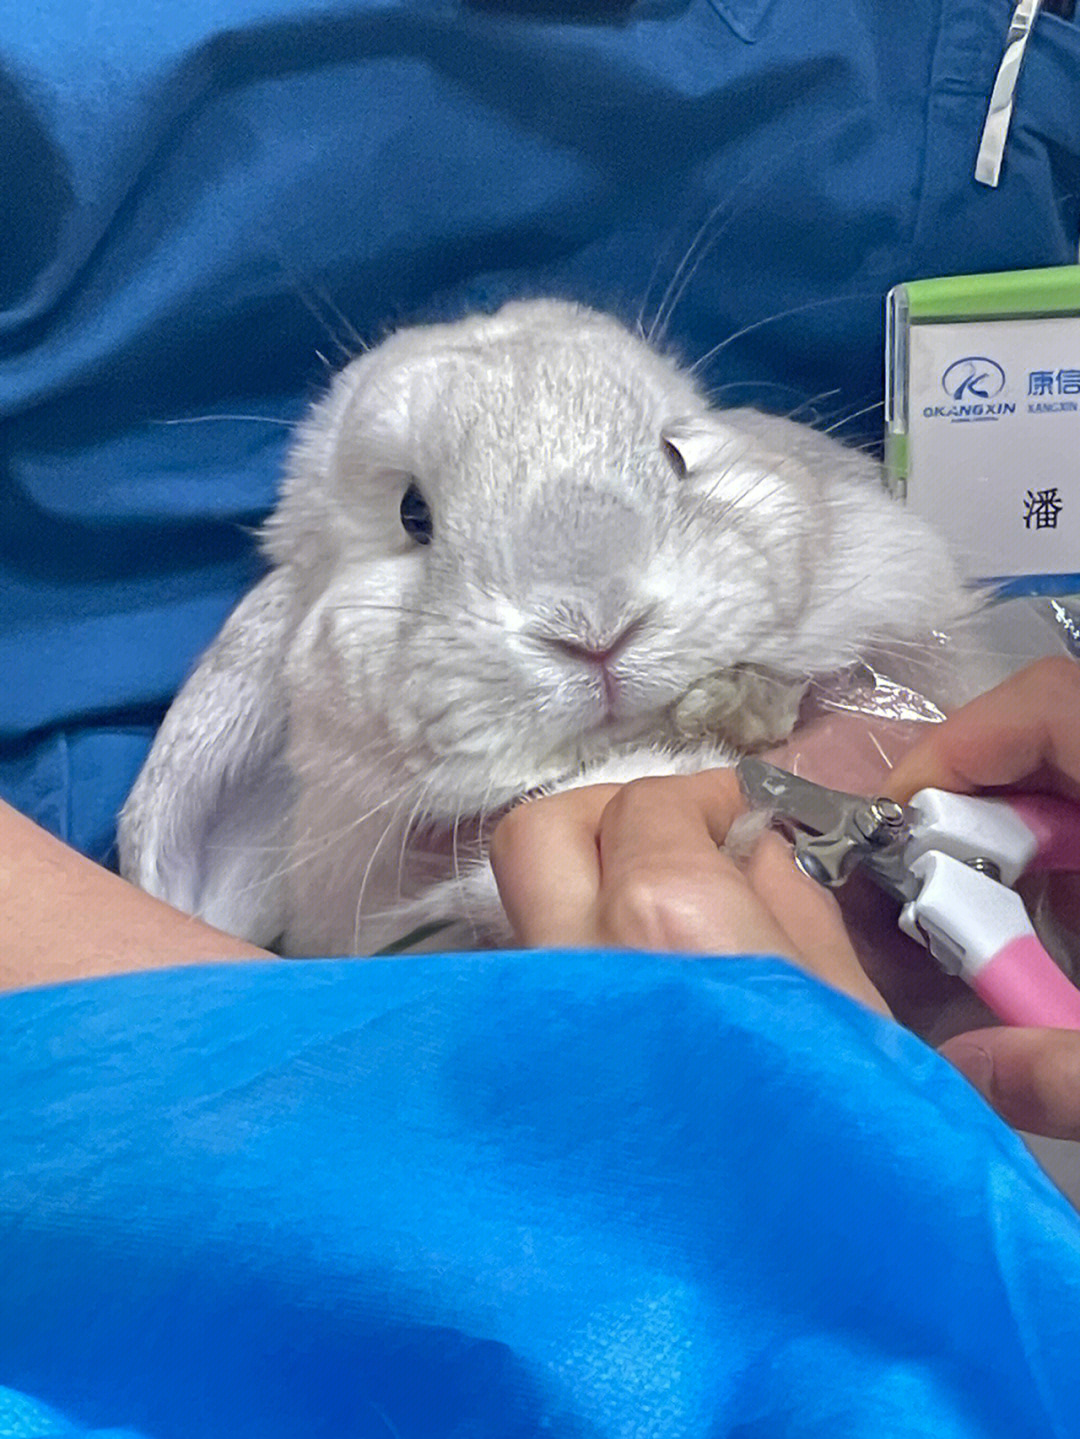 剪指甲的小兔子真是太可爱了